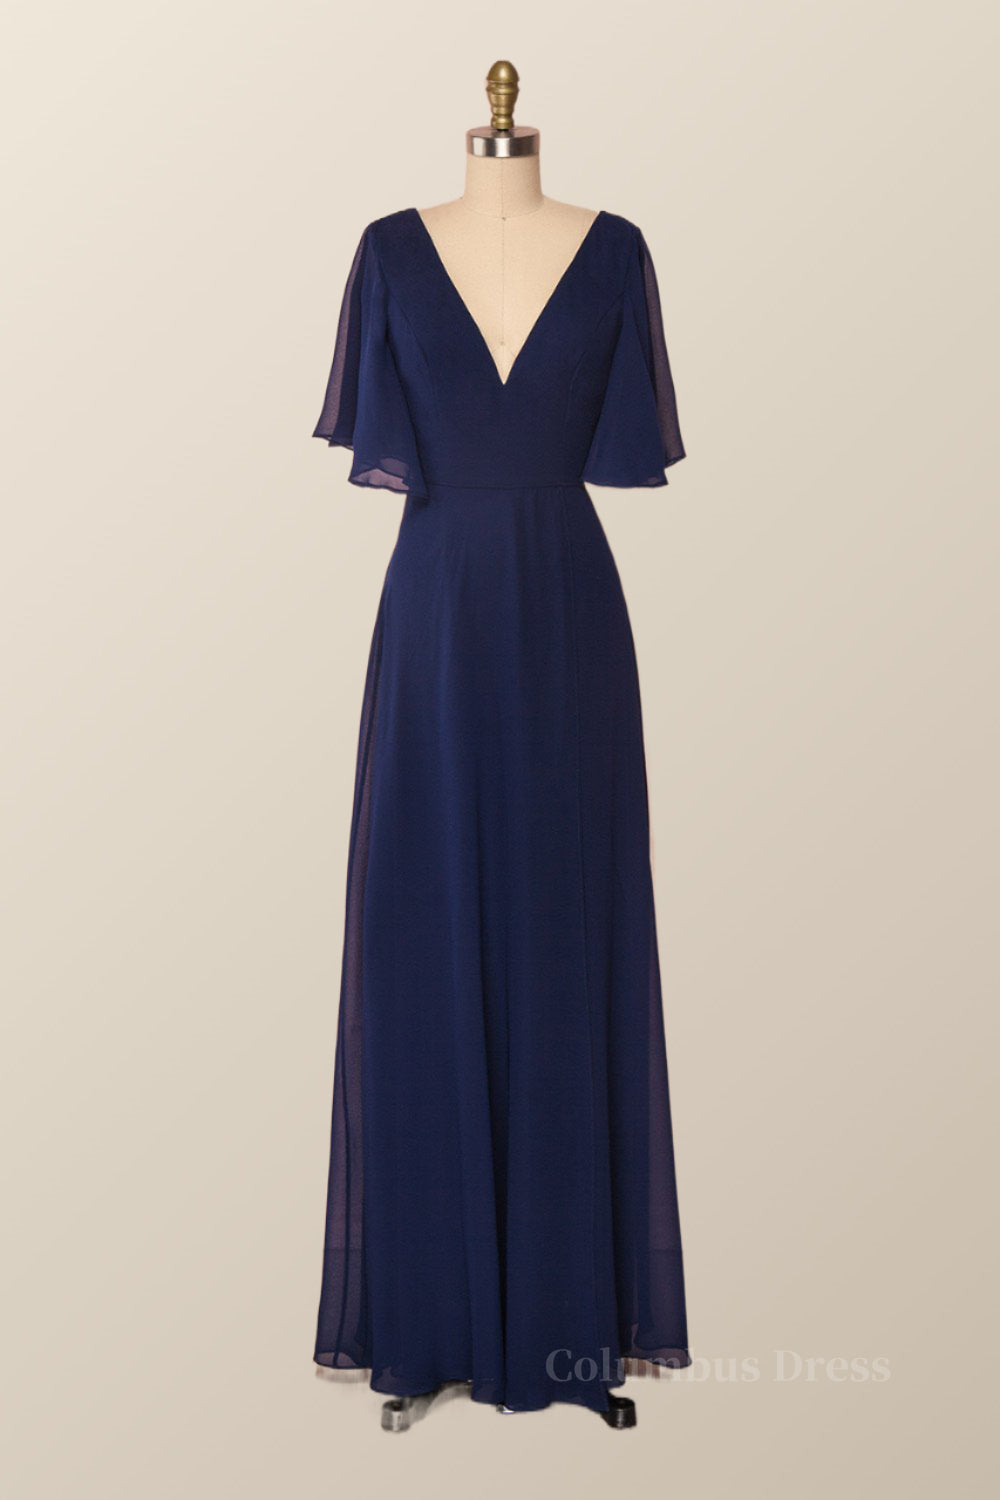 Bridesmaid Dresses Inspiration, Flare Sleeves Navy Blue Chiffon Long Bridesmaid Dress